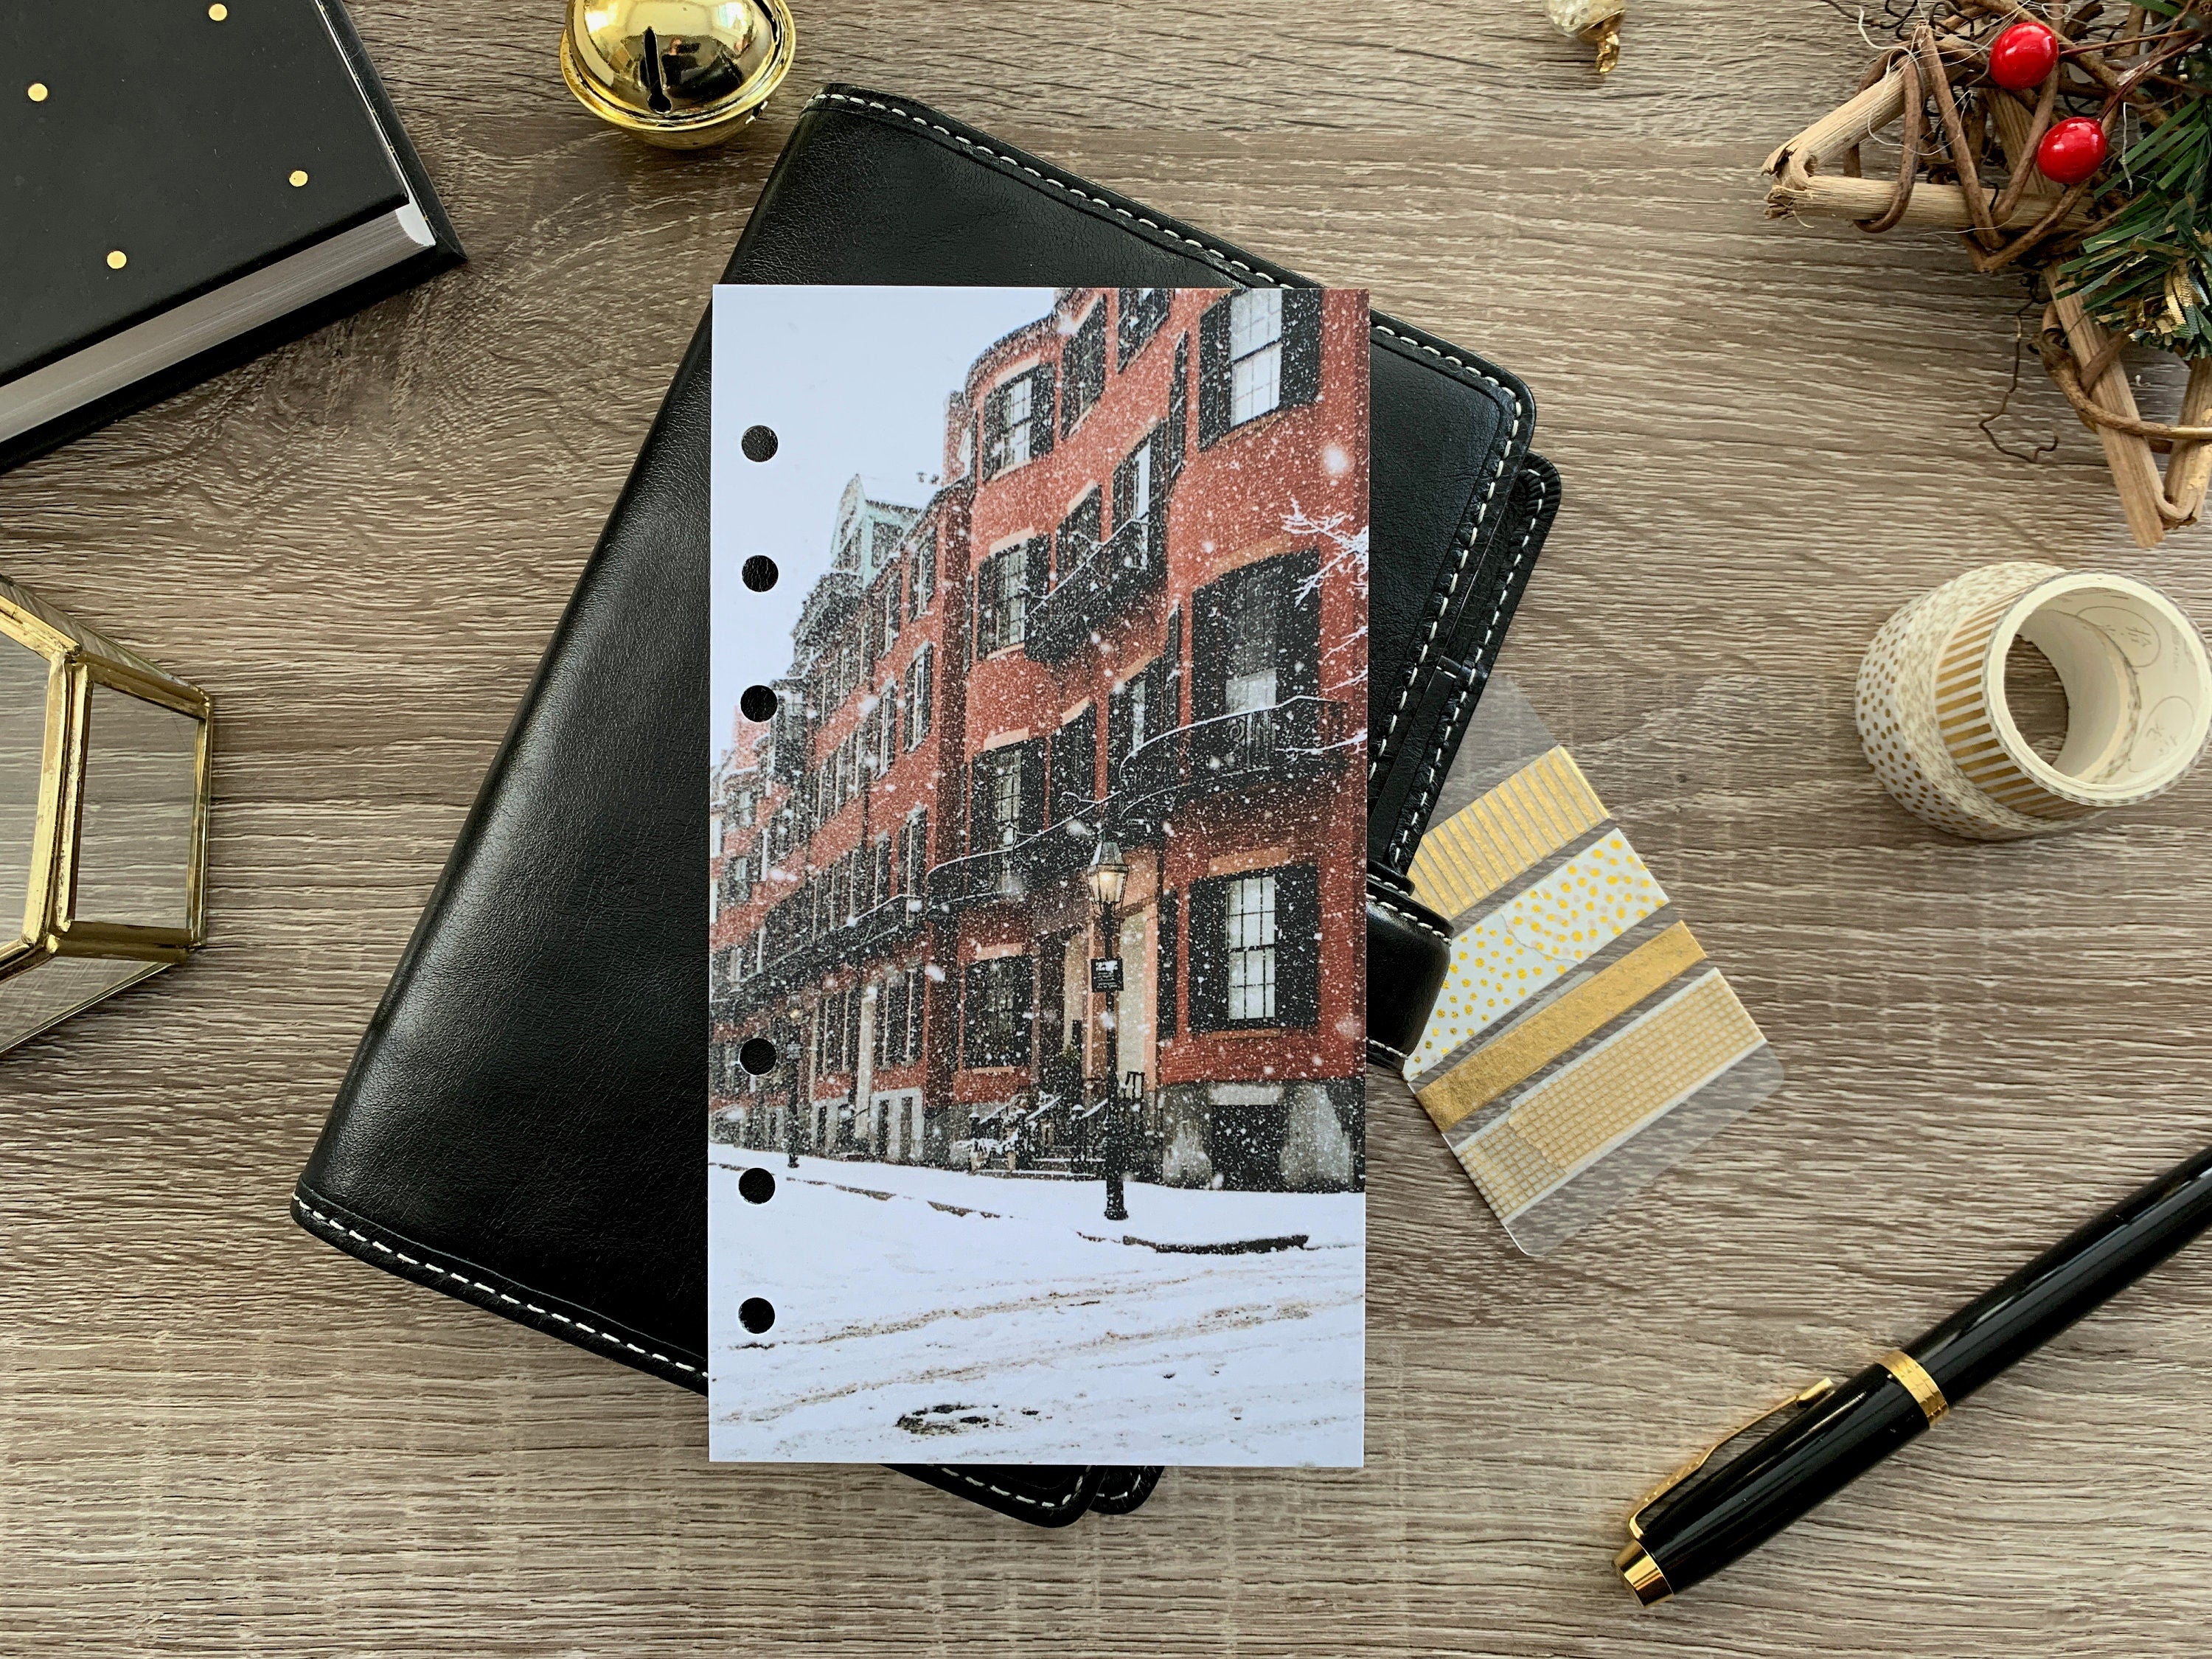 Snowy Street - Festive Holiday Dashboard